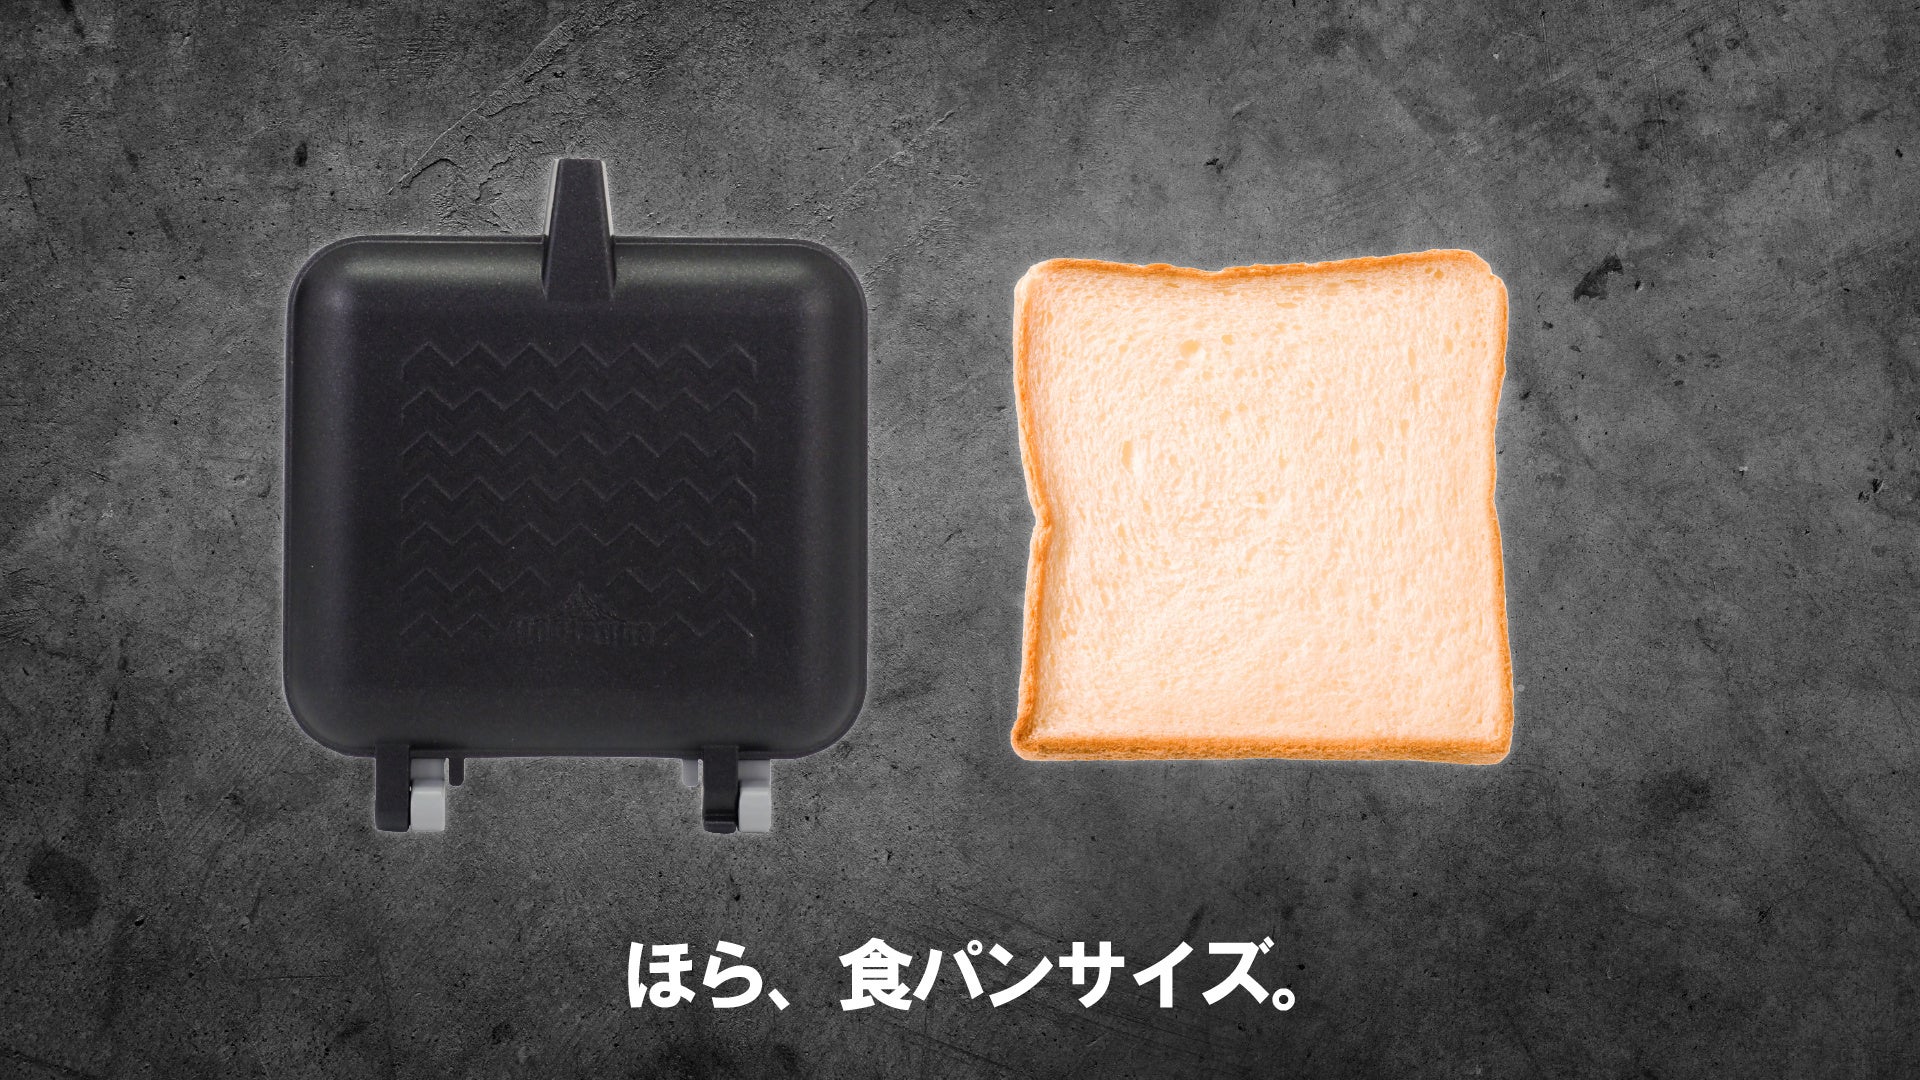 【アウトドア】取手が外せてコンパクト！『ダブルストレージホットパン』が6月13日Makuakeに登場のサブ画像3